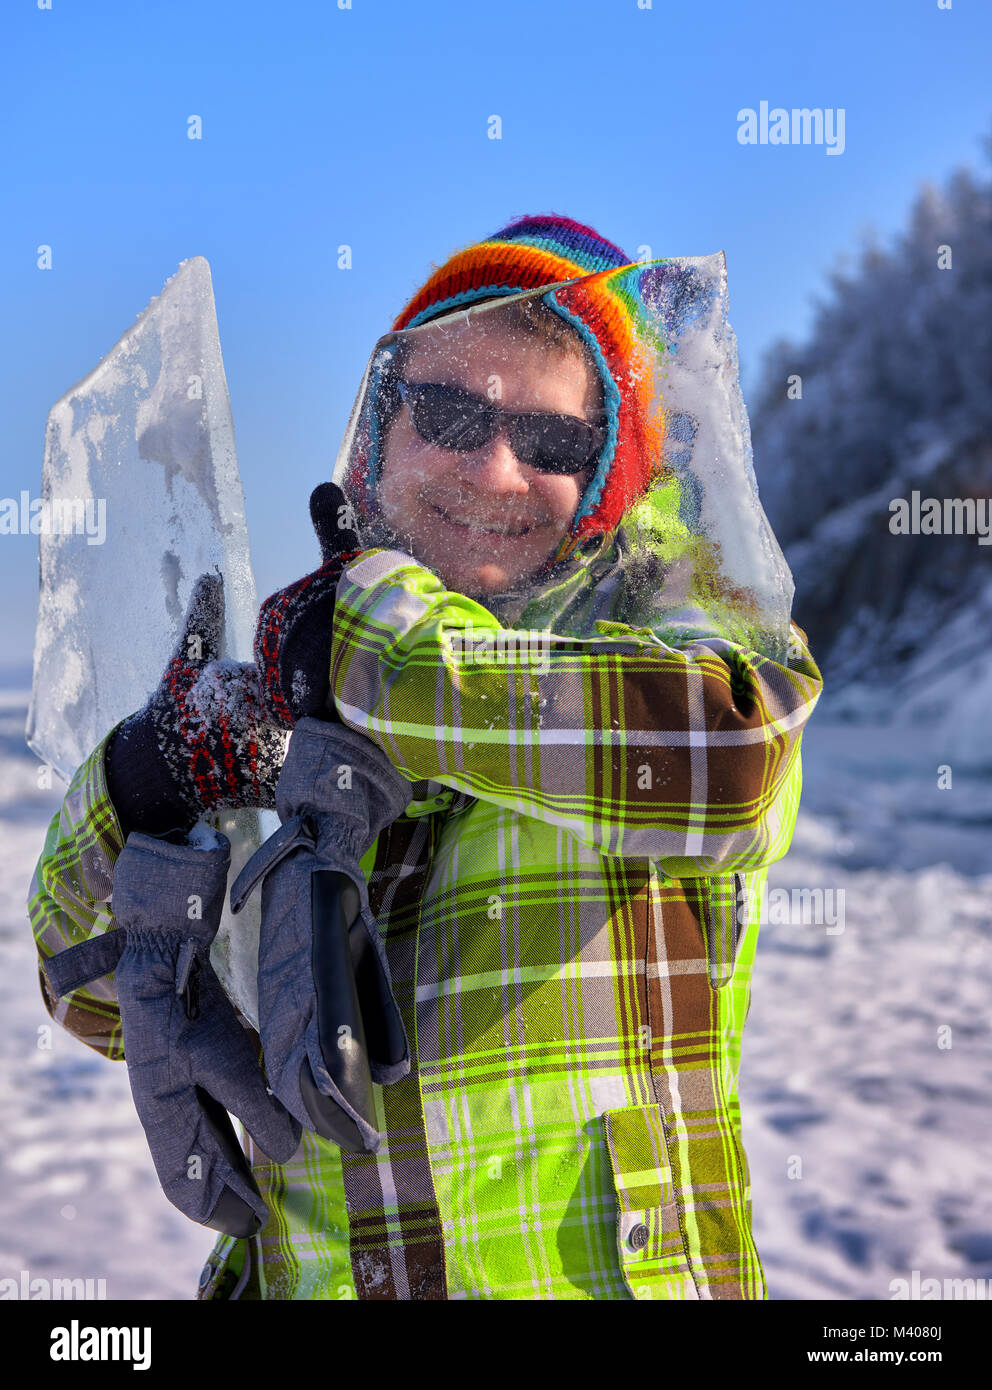 Feliz compañeros mira a través de una fina capa de hielo de Baikal hummock sujeta en su mano. Positivo de recreación y diversión de invierno en Siberia. Foto de stock